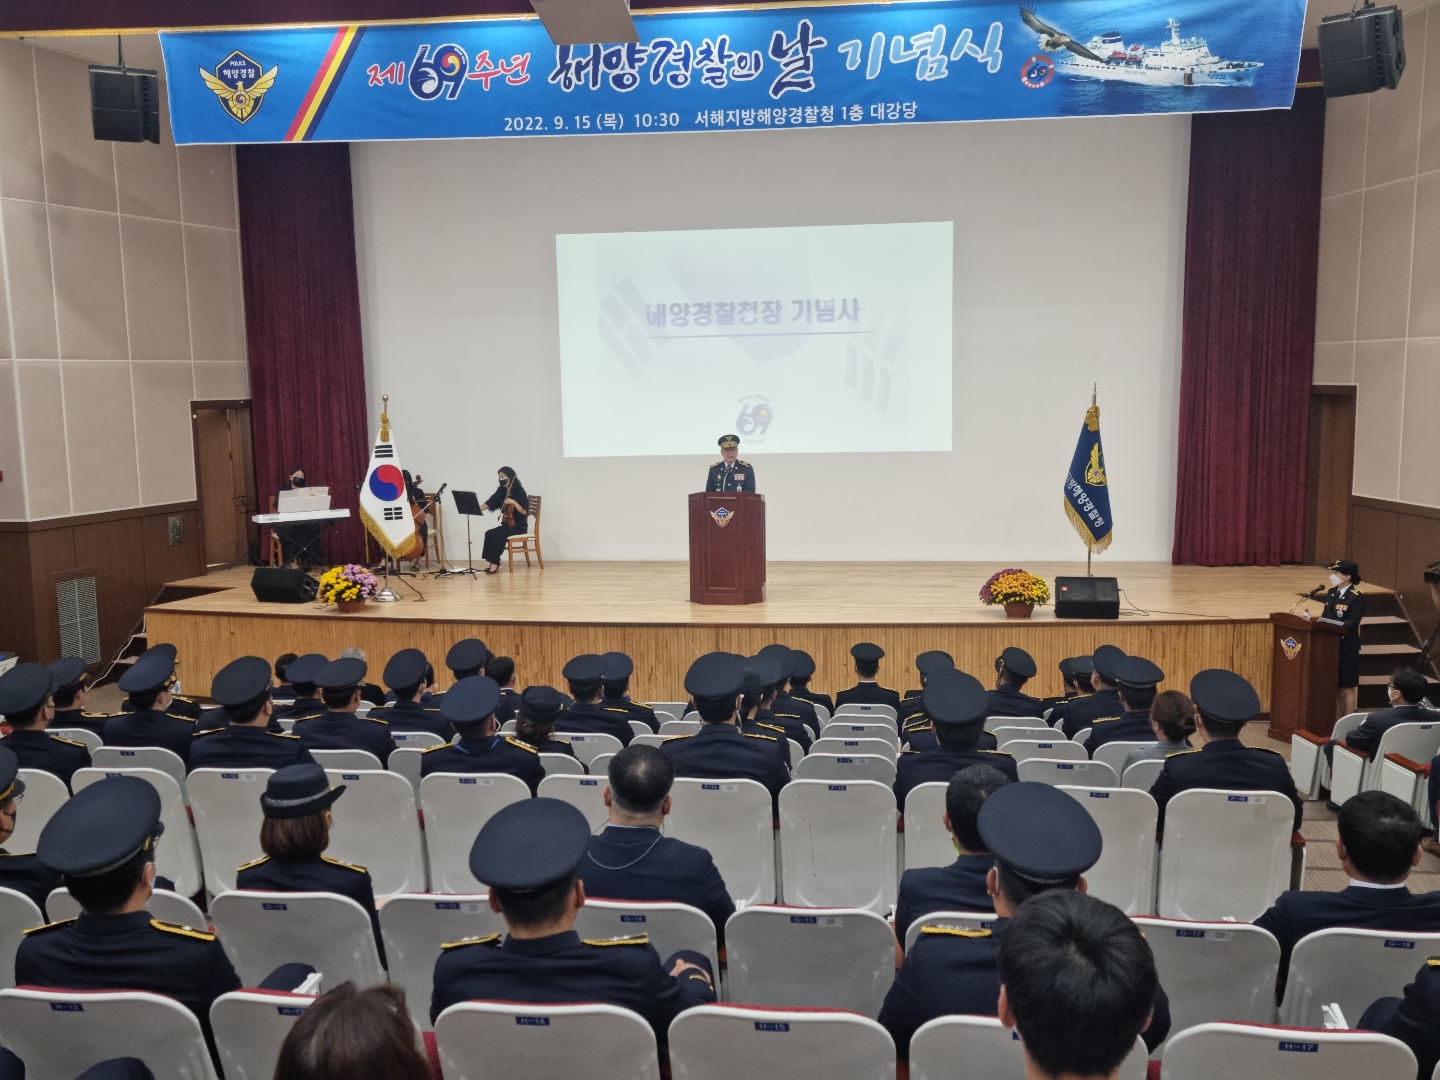 15일 전남 목포시 서해지방해양경찰청 청사 대강당에서 열린 제69주년 해양경찰의 날 기념식에서 김종욱 청장이 기념사를 하고 있다.